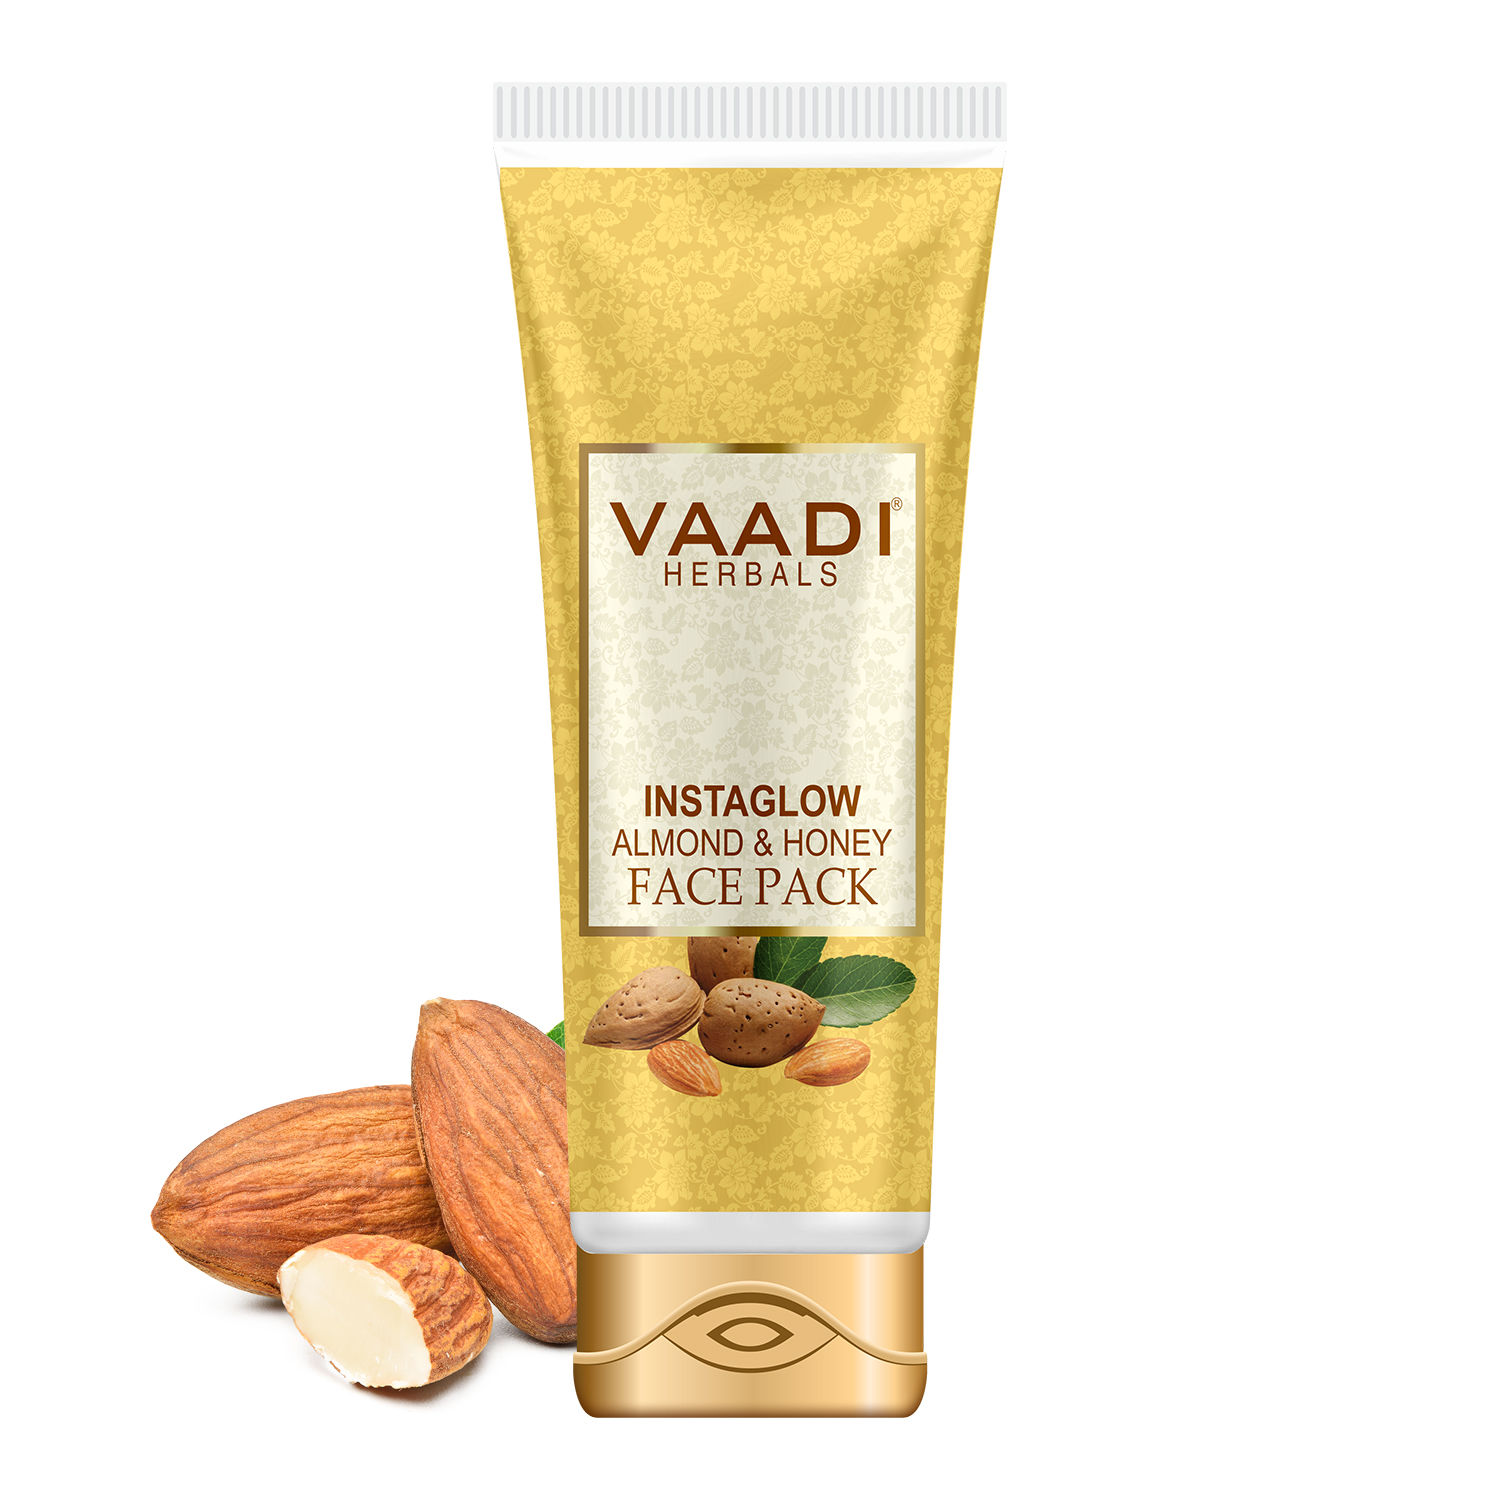 Buy Vaadi Herbals Instaglow Almond & Honey Face Pack (120 g) - Purplle